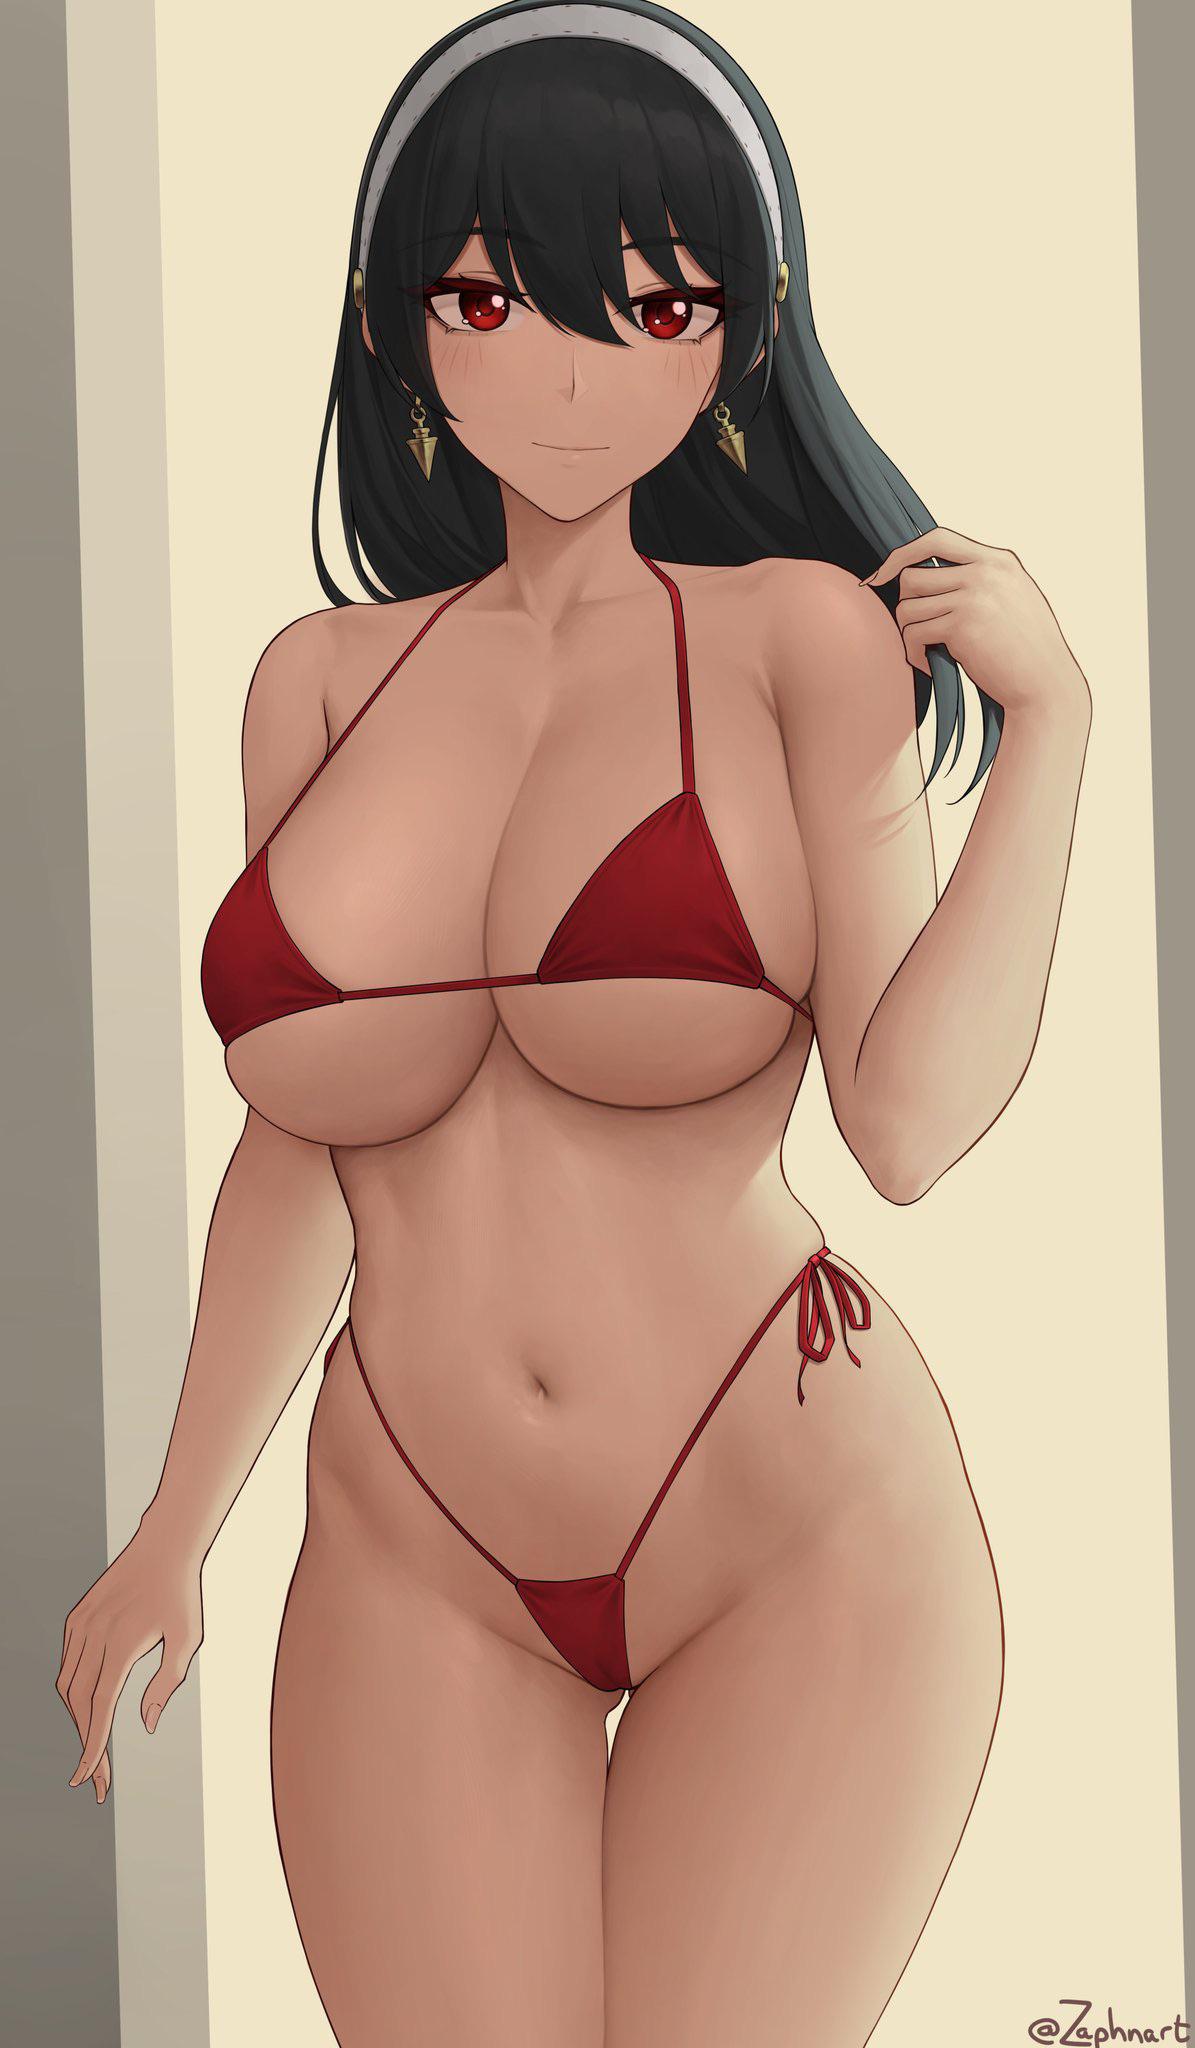 Micro Bikini Hentai - Yor enjoying her new bikini